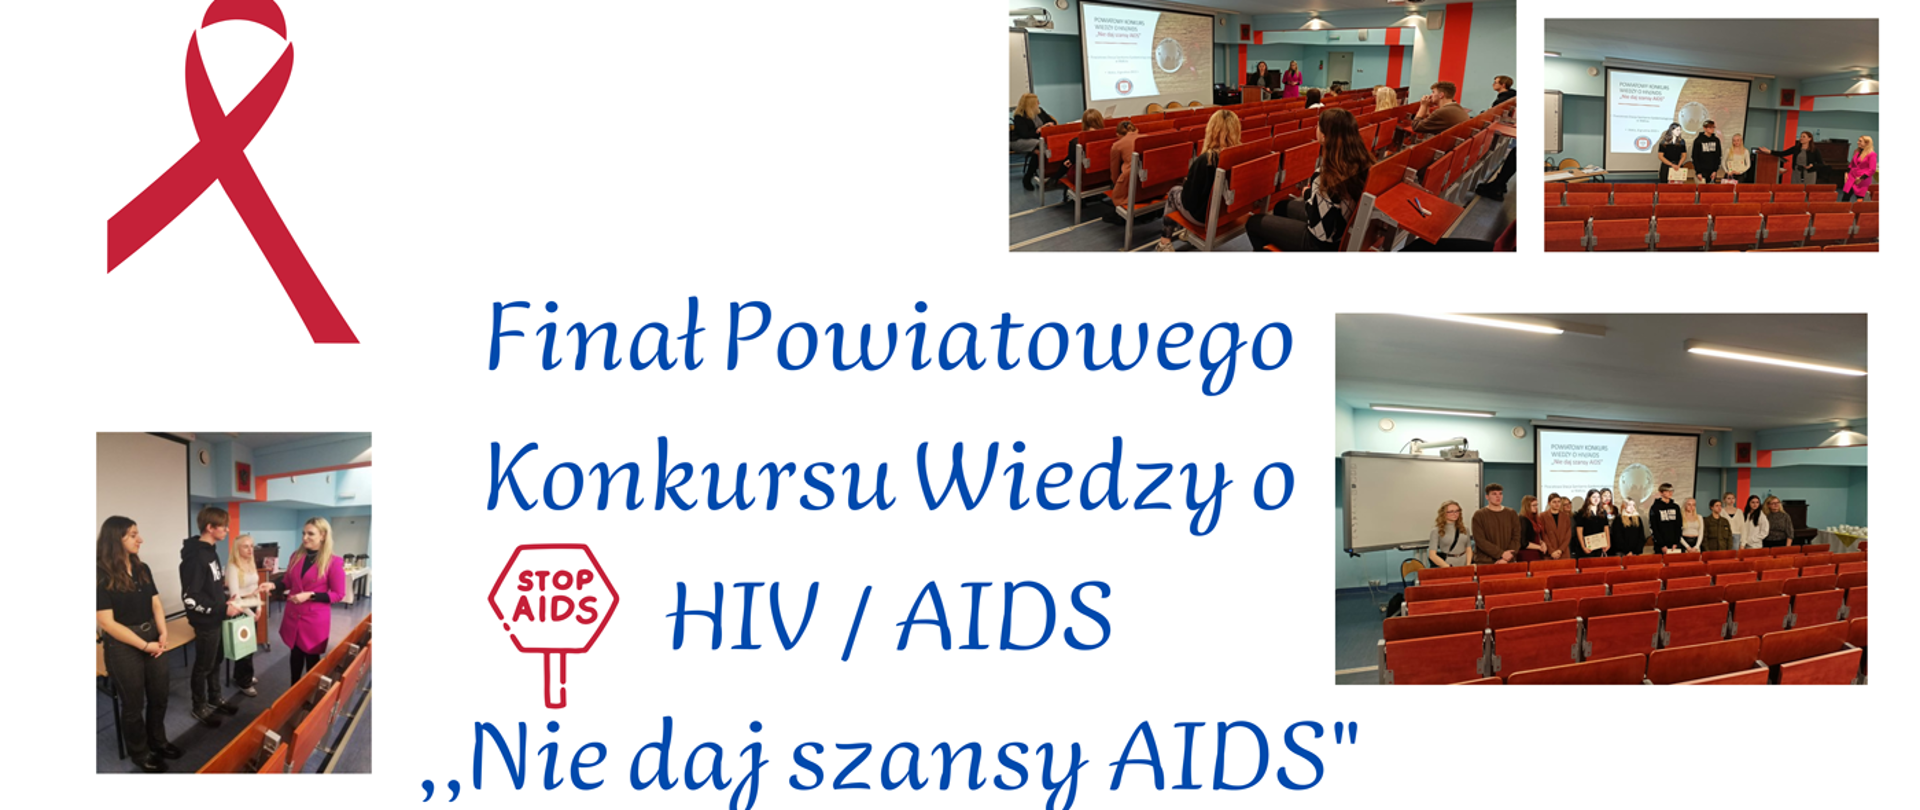 final-powiatowego-konkursu-wiedzy-o-hiv-aids